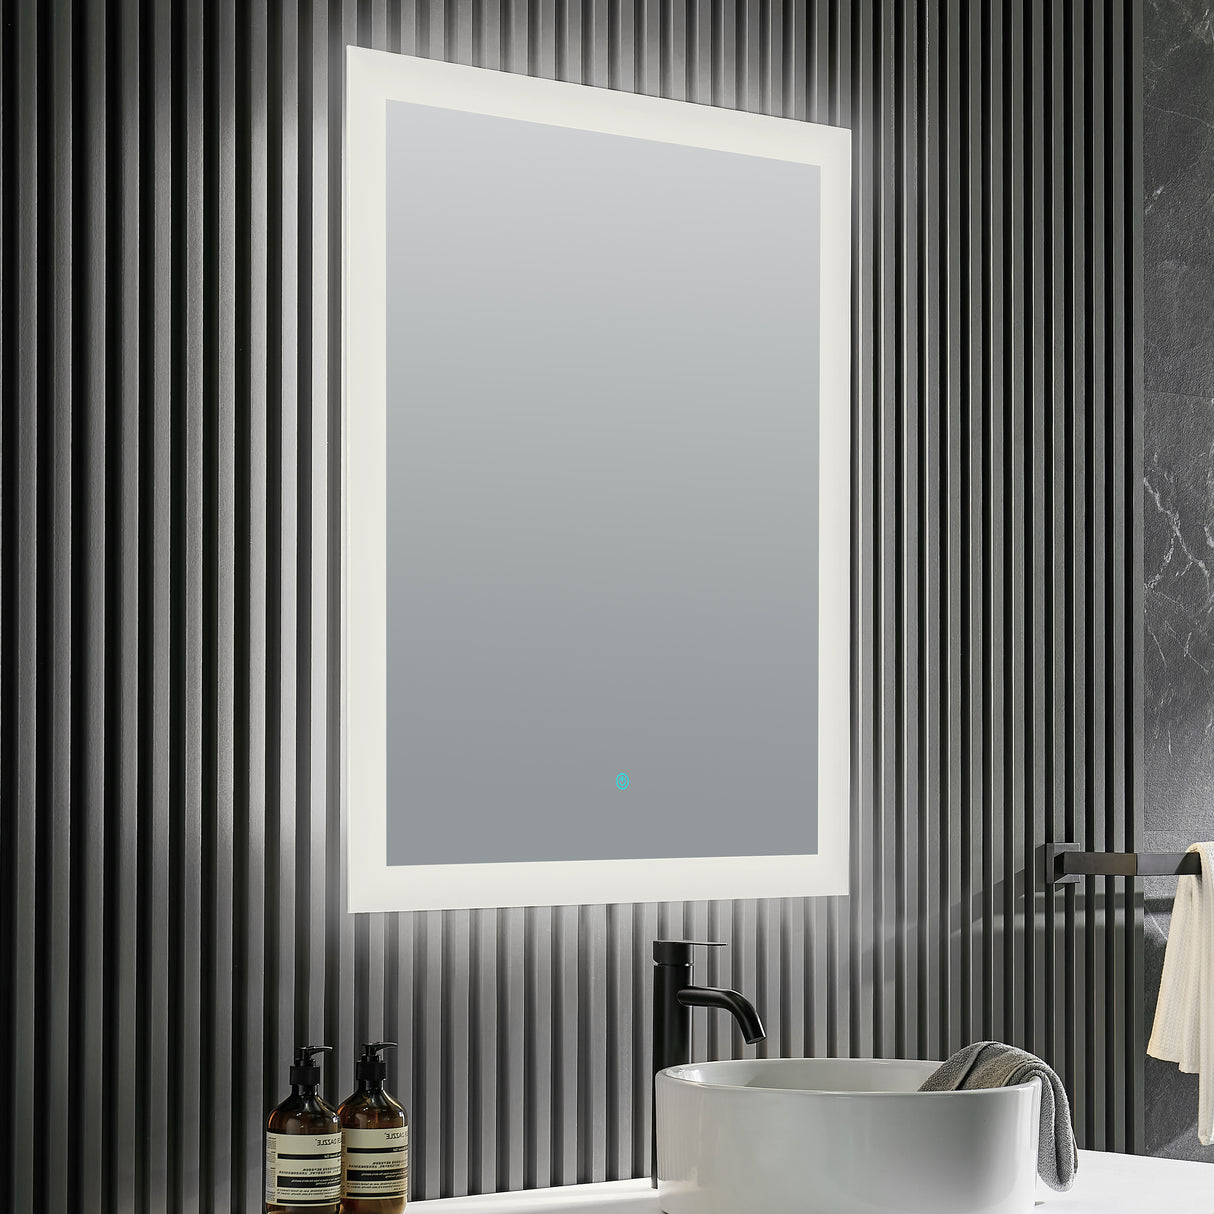 ANZZI BA-LMDFX003AL Olympus 36 in. x 24 in. Frameless LED Bathroom Mirror